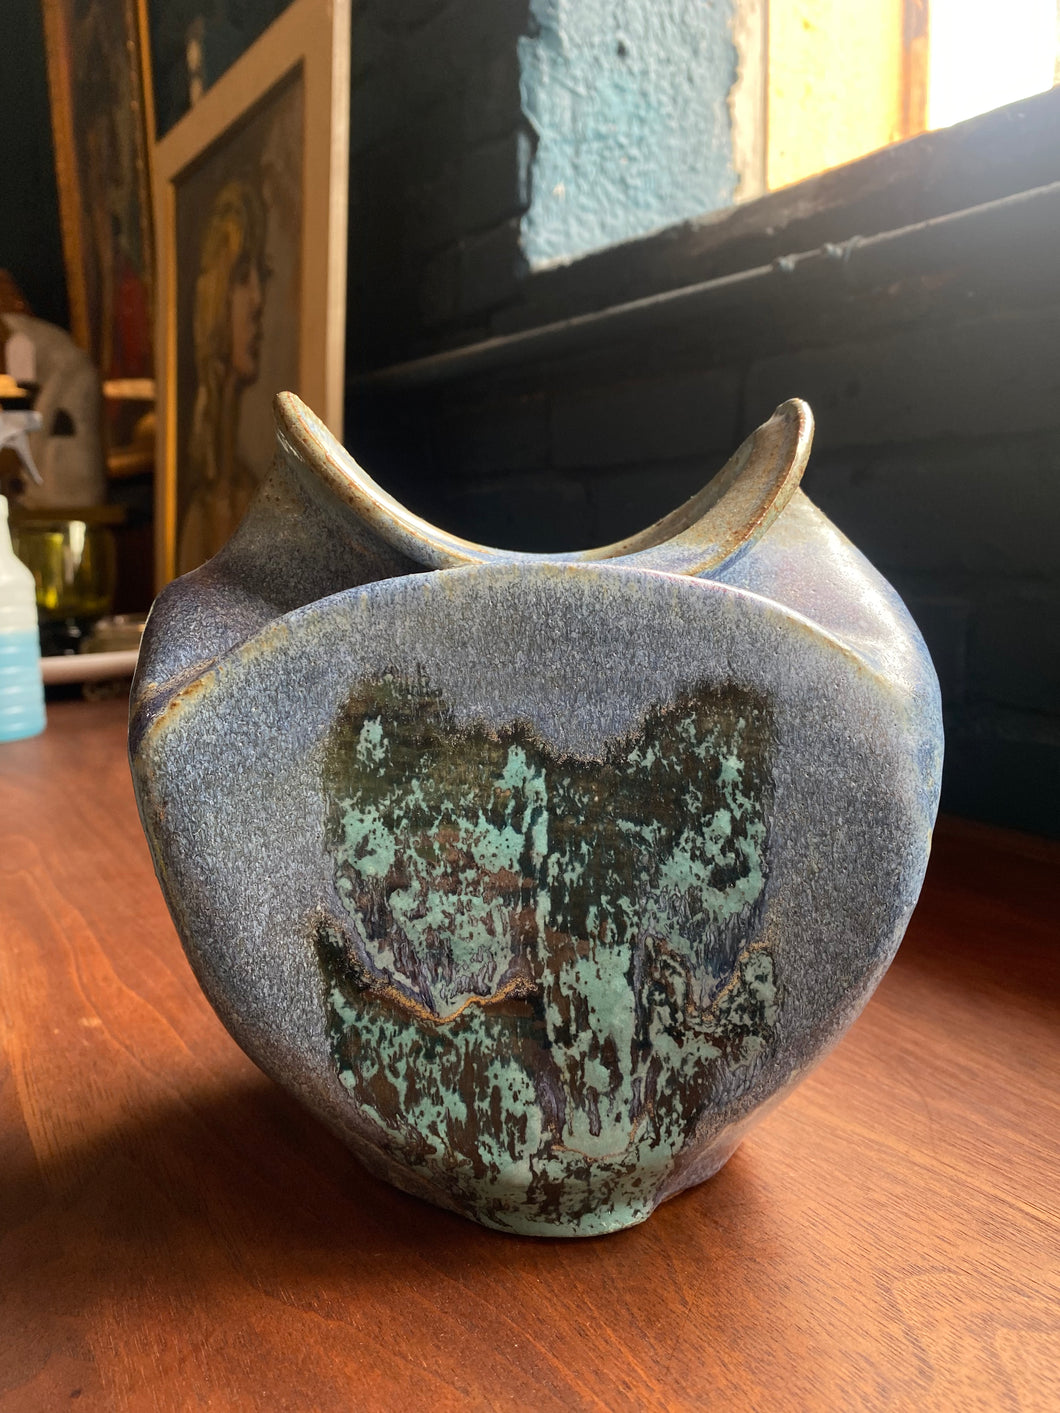 Vintage Blue Sculptural Stoneware Vase - Signed